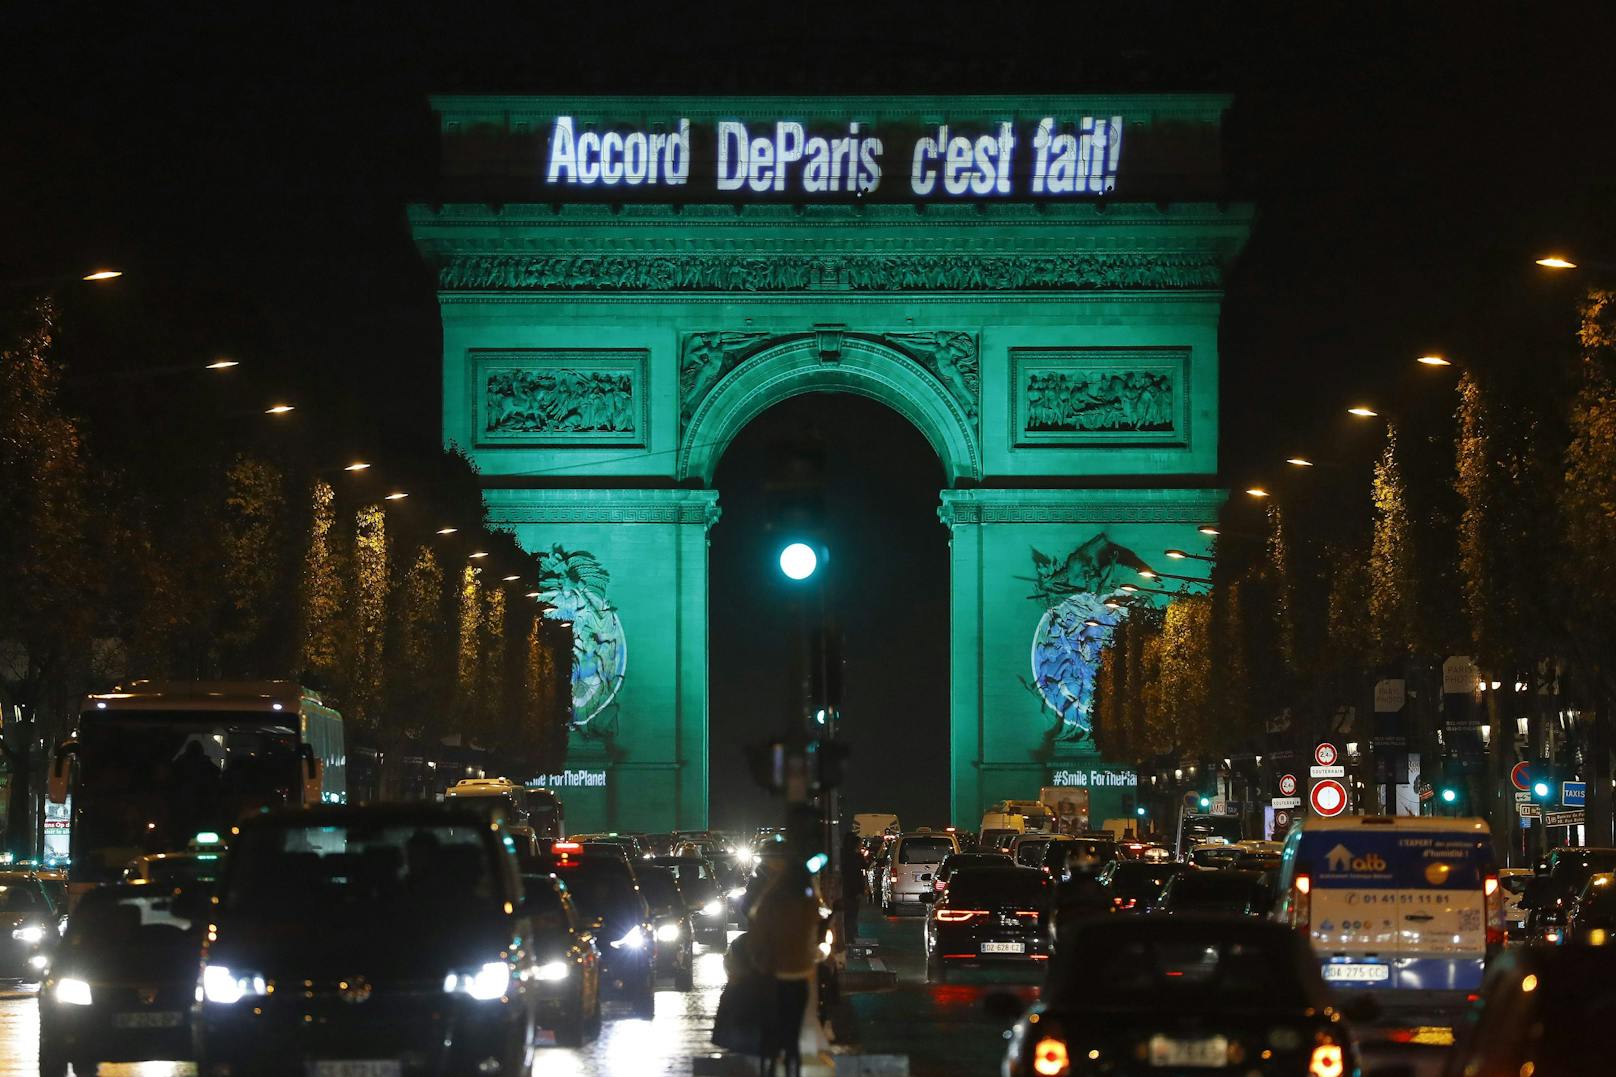 Dieses am 4. November 2016 aufgenommene Foto zeigt den Pariser&nbsp;Triumphbogen. Er ist mit den Worten "Das Pariser Abkommen ist abgeschlossen" beleuchtet, um den ersten Tag der Anwendung des Pariser COP21-Klimaabkommens zu feiern.<br>